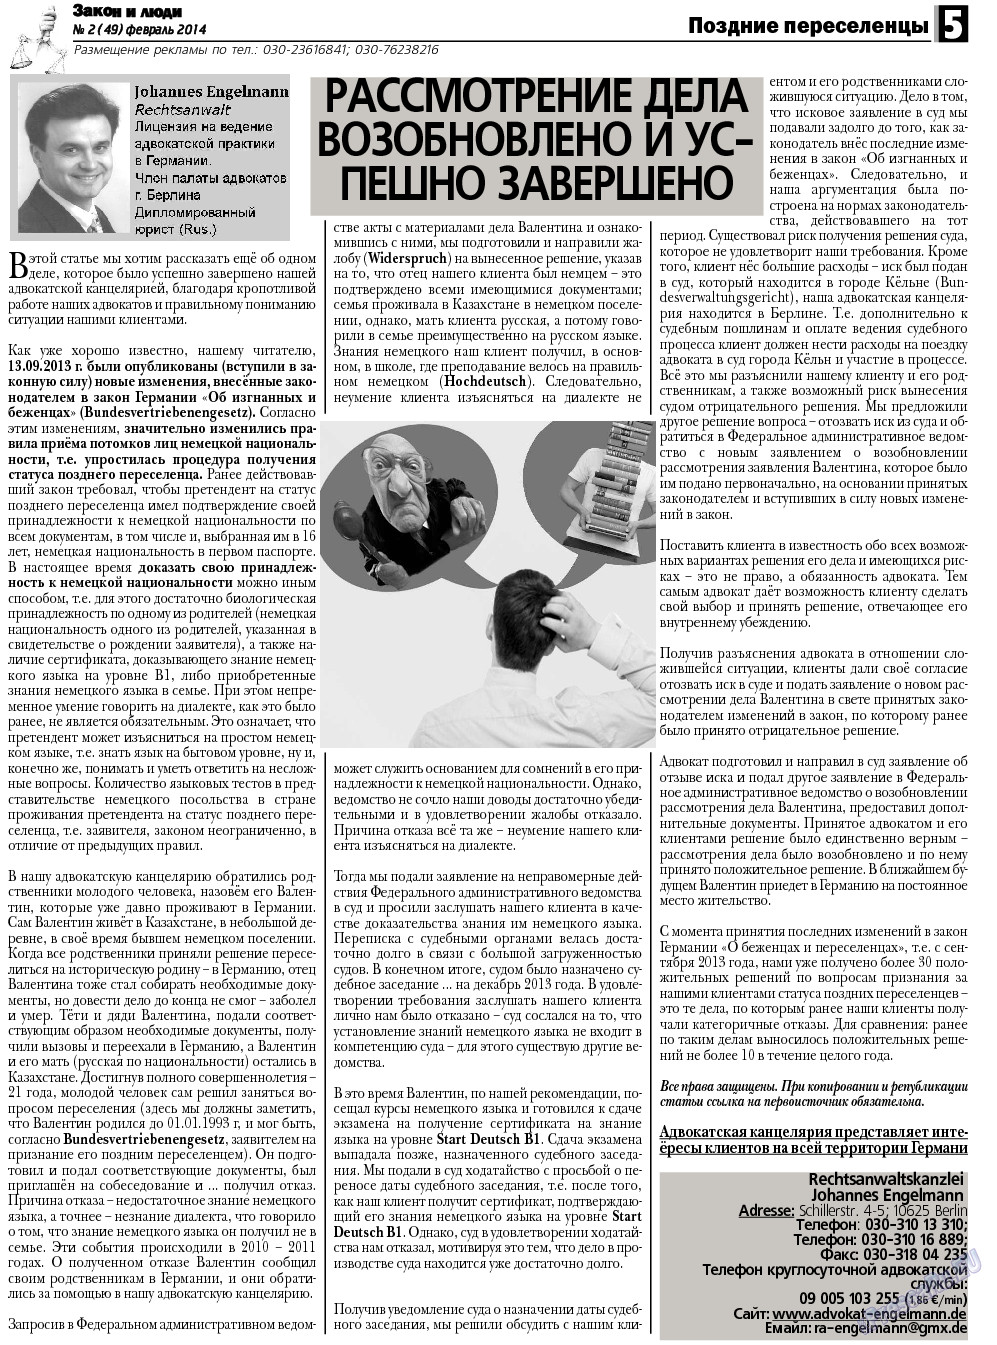 Закон и люди, газета. 2014 №2 стр.5